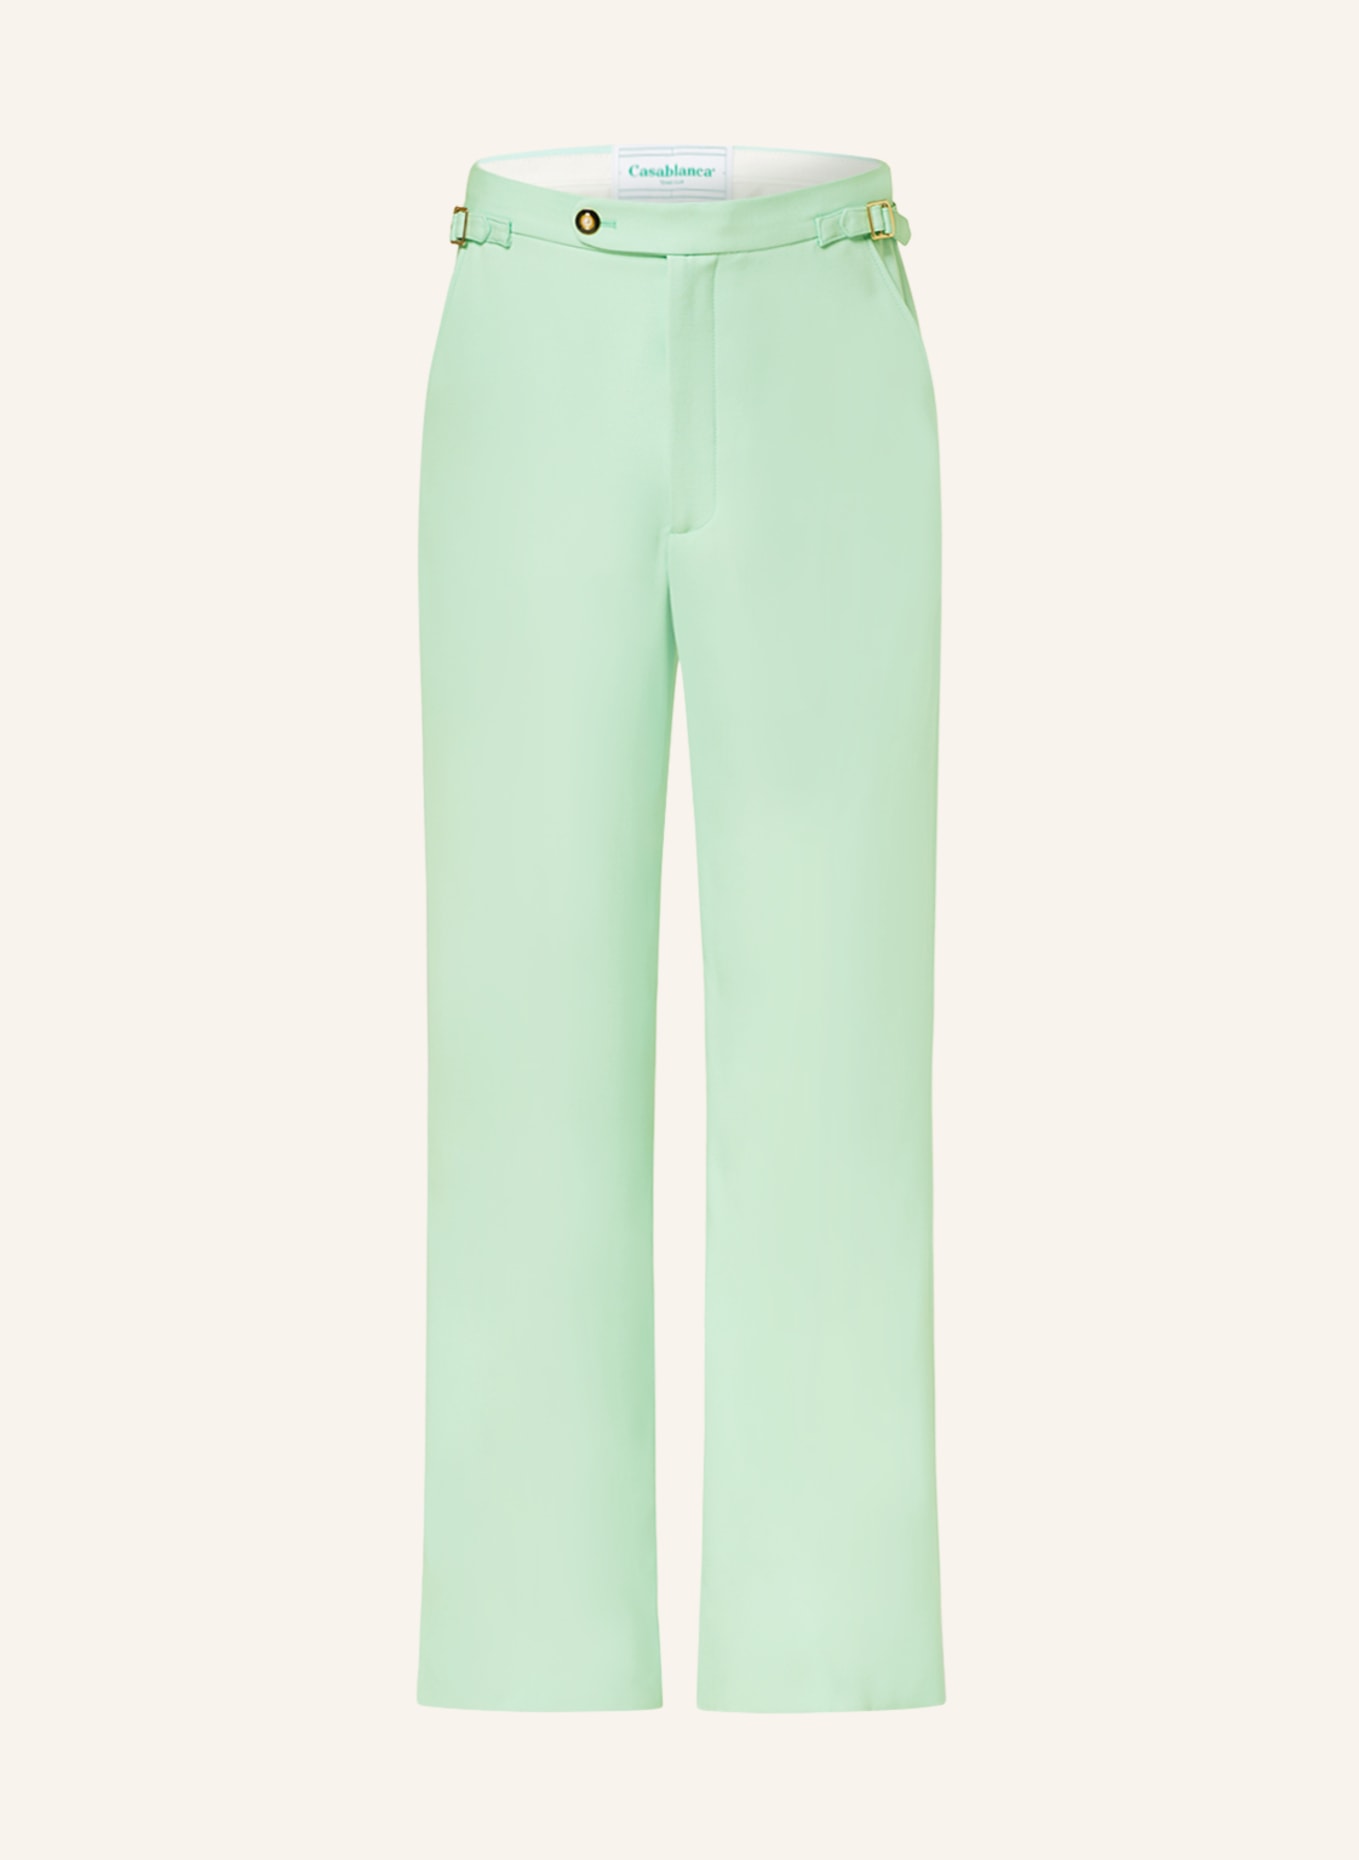 Casablanca Suit trousers regular fit, Color: MINT (Image 1)